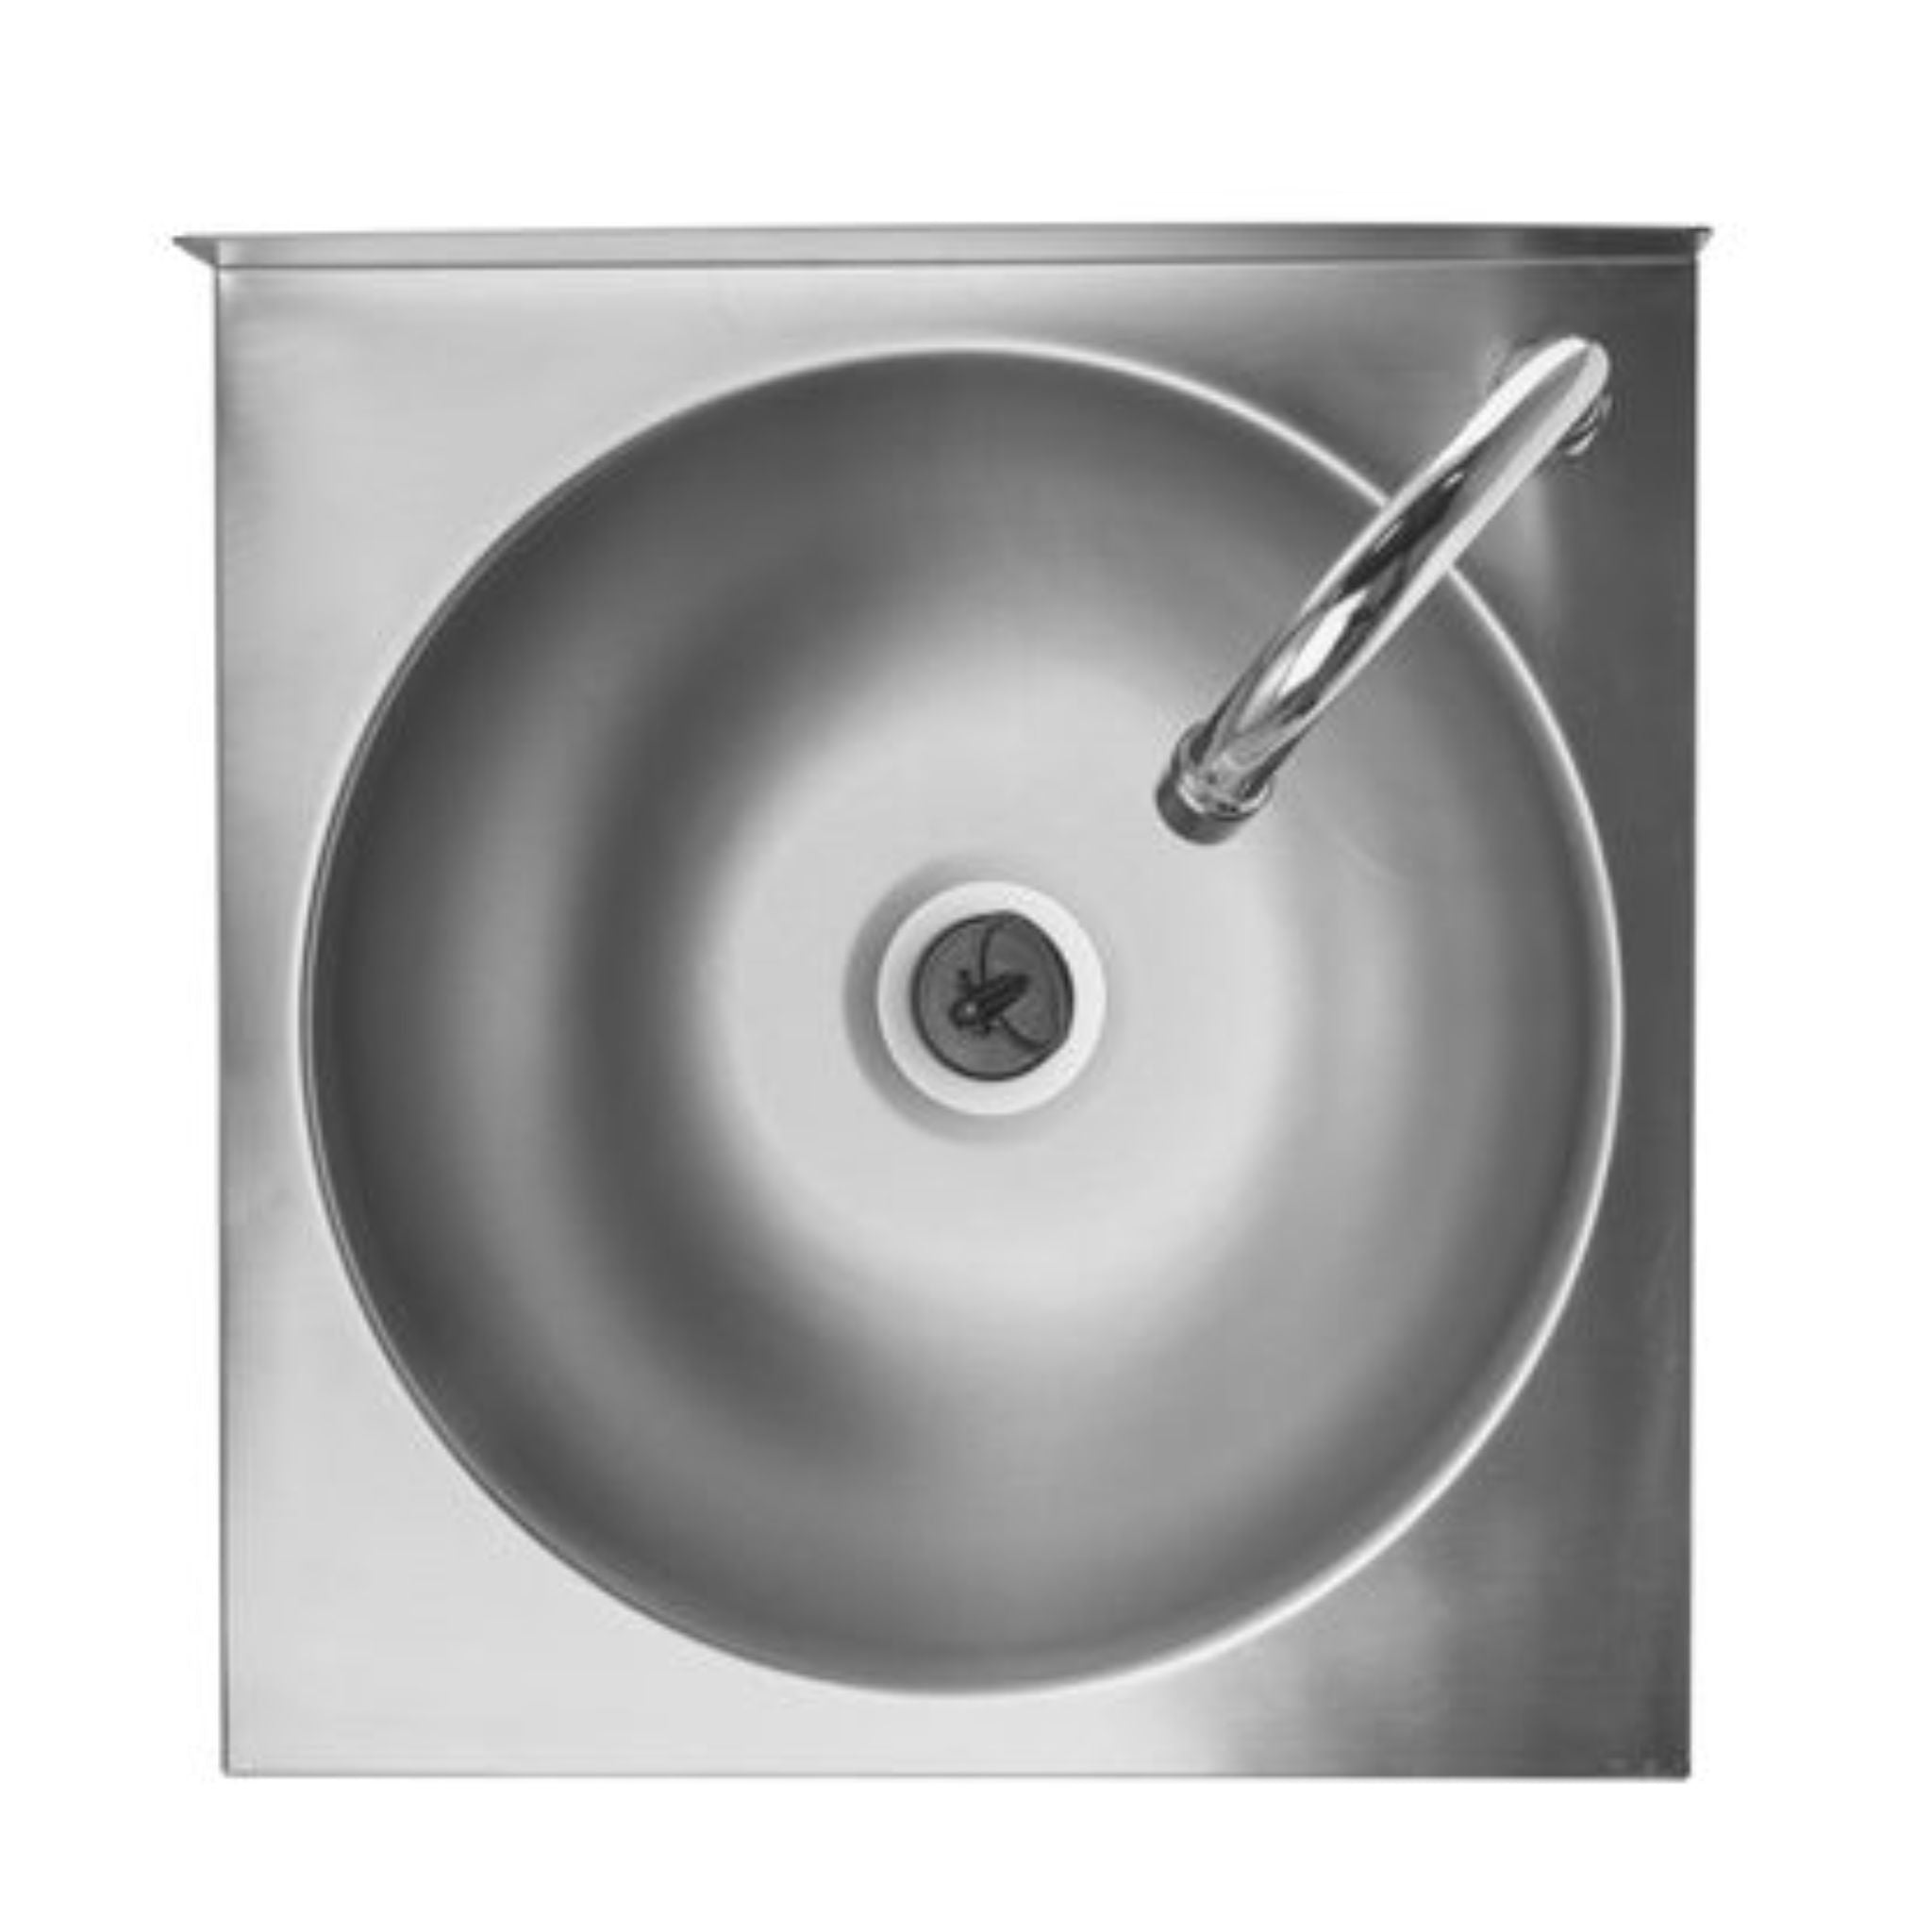 Edelstahl Handwaschbecken Standard-3